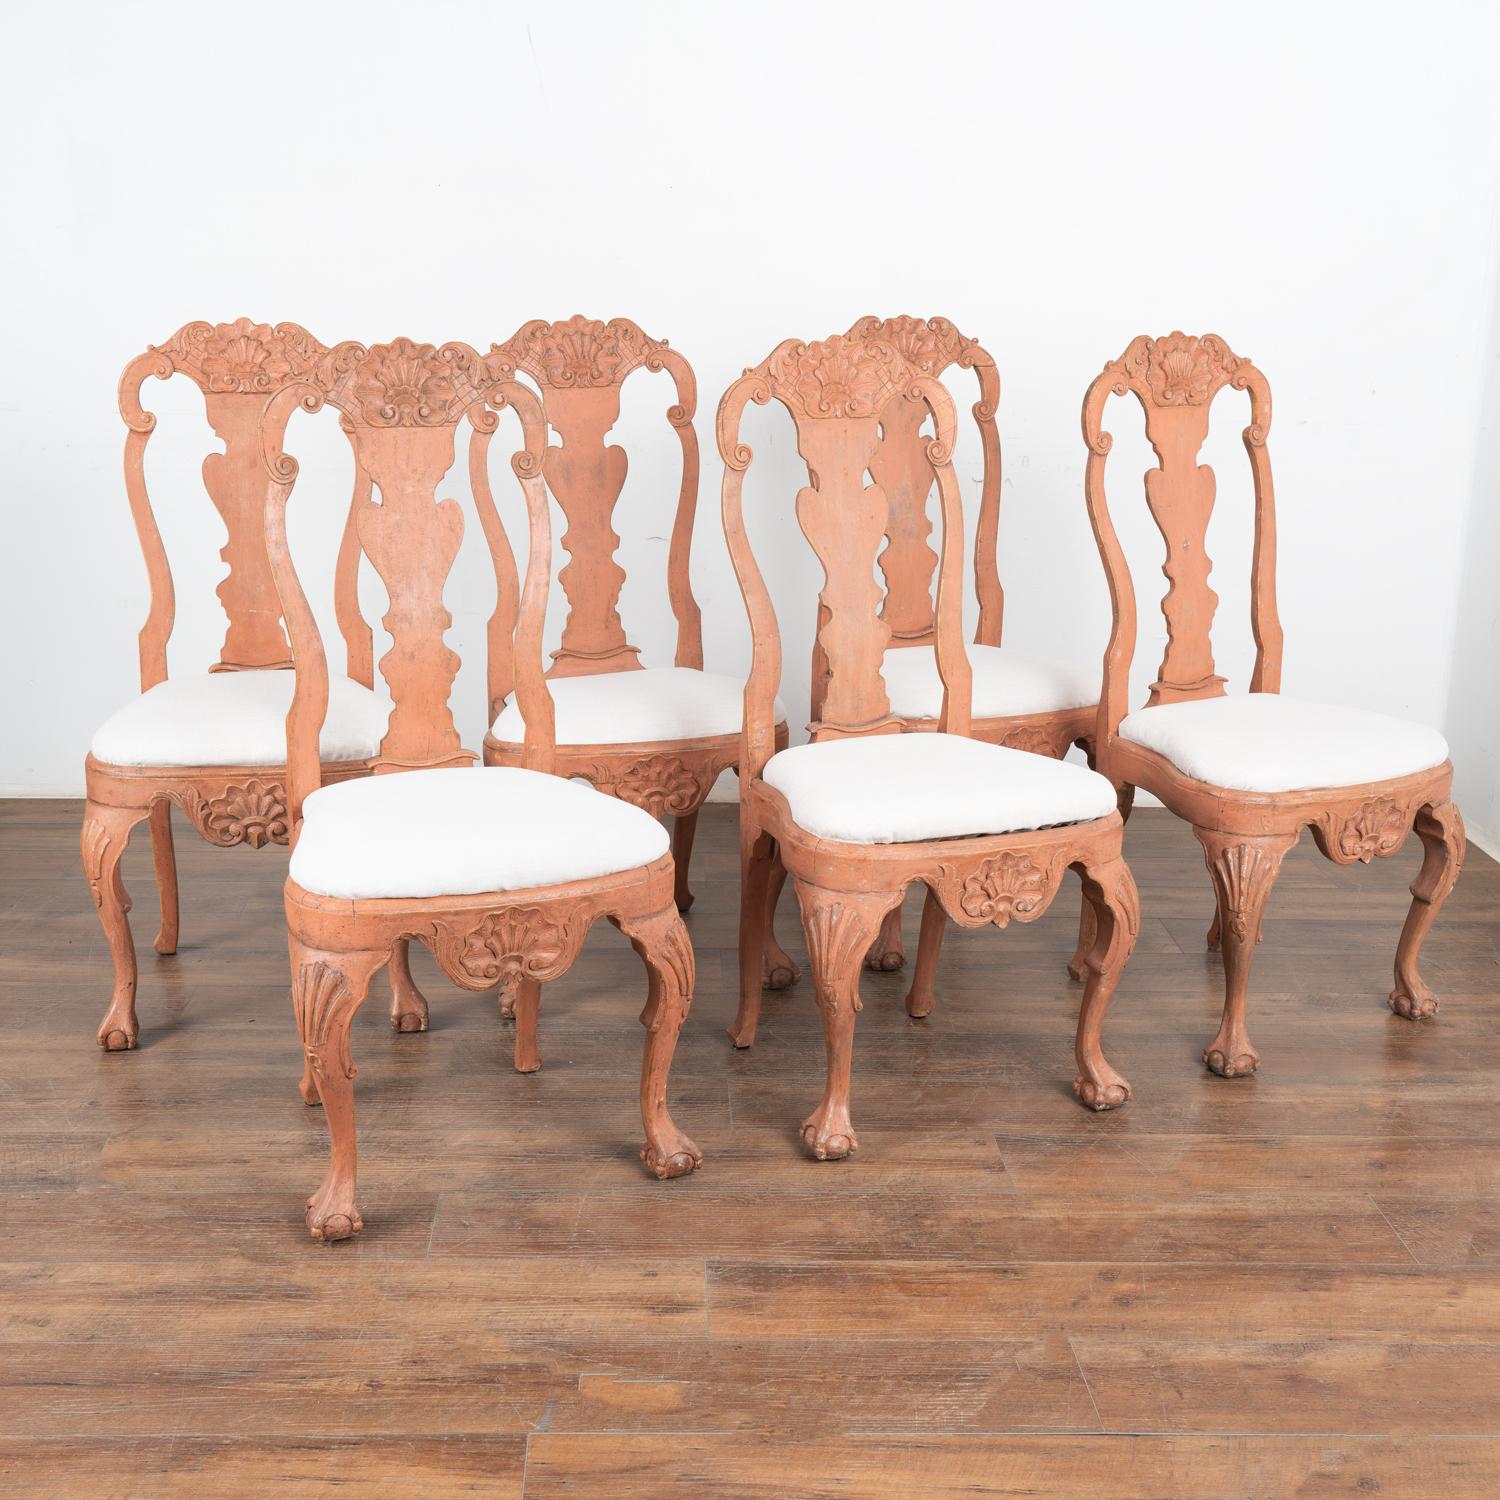 Ensemble de 6 belles chaises de salle à manger rococo suédoises avec des pieds cabriolets courbés et des accents sculptés. 
La nouvelle finition peinte en couches de saumon avec des nuances de rose, appliquée par des professionnels, a été légèrement